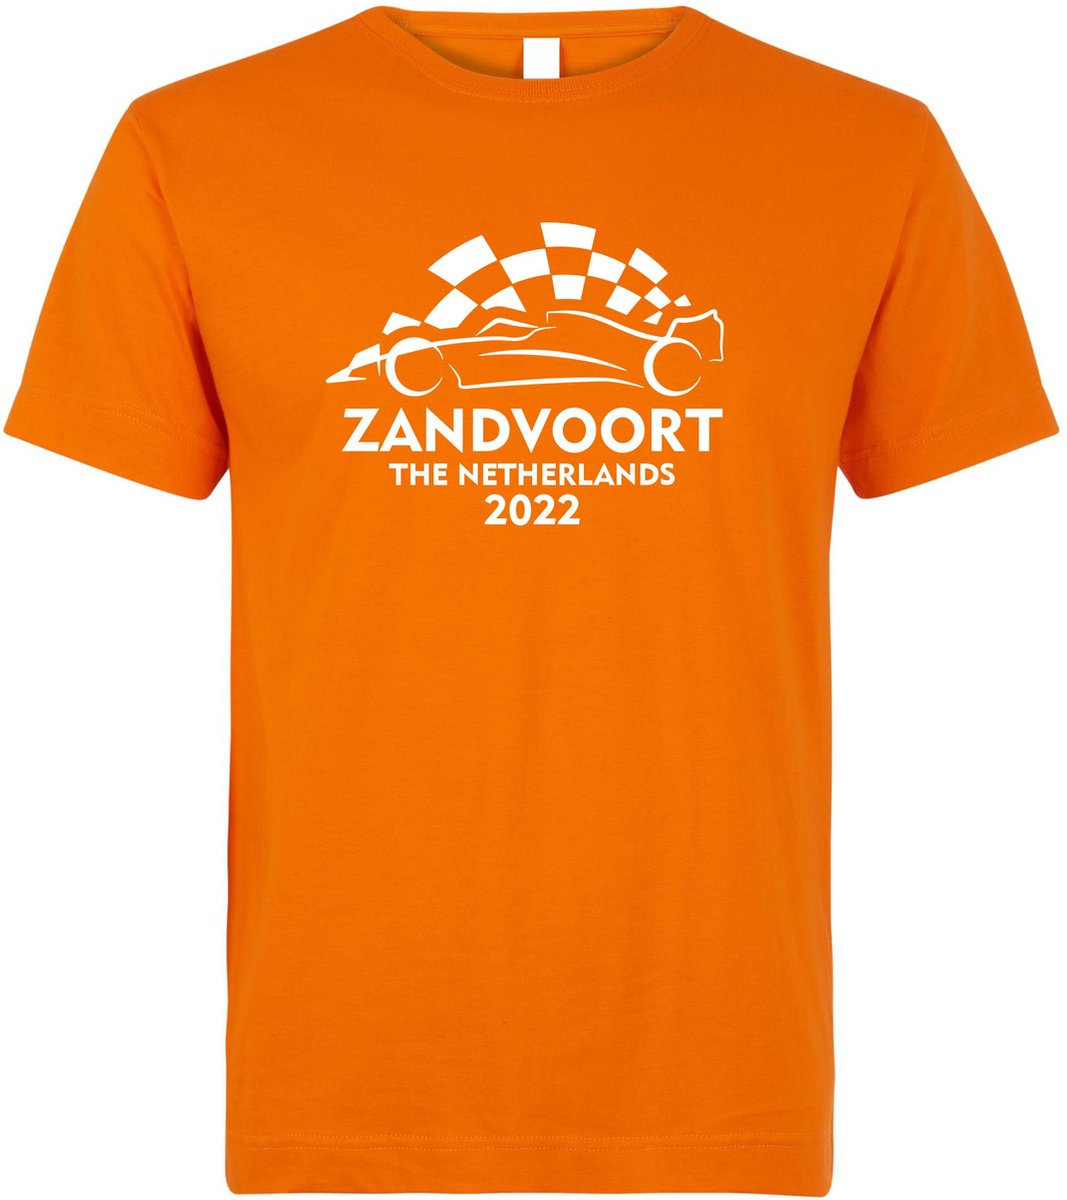 T-shirt Zandvoort The Netherlands 2022 met raceauto | Max Verstappen / Red Bull Racing / Formule 1 fan | Grand Prix Circuit Zandvoort | kleding shirt | Oranje | maat L